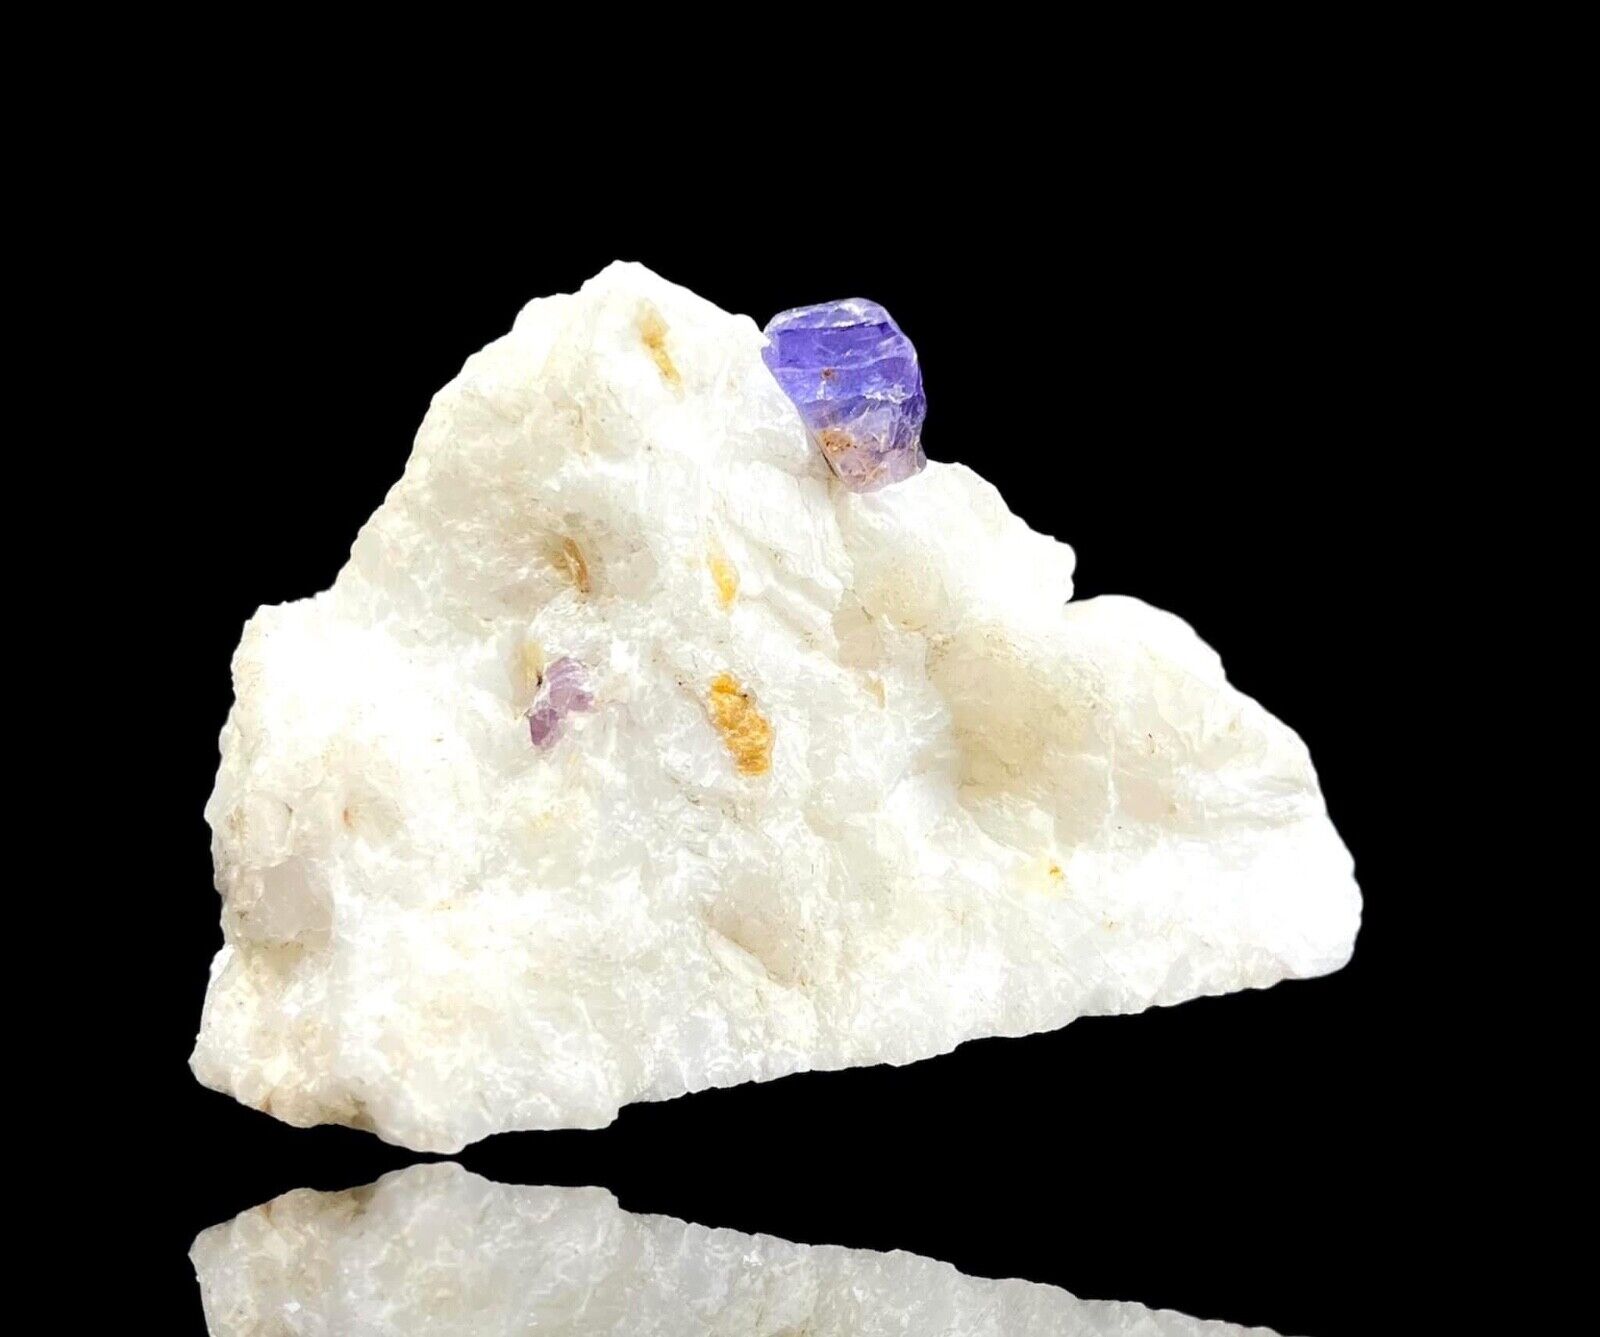 236 Gram beautiful purple spinel crystal specimen from Skardu Pakistan.